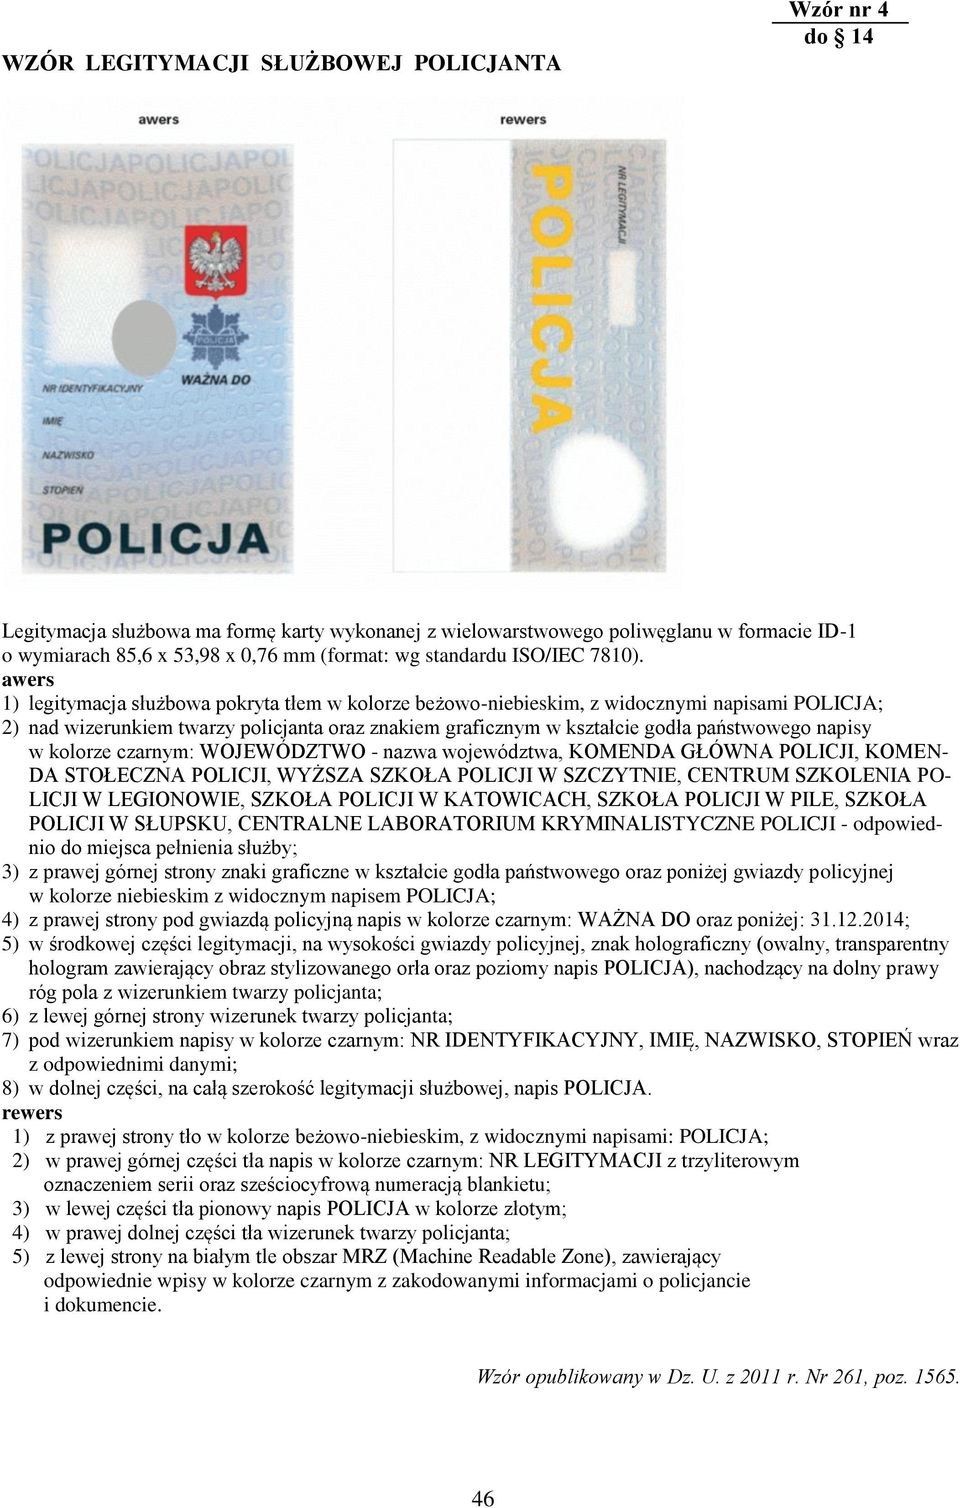 awers 1) legitymacja służbowa pokryta tłem w kolorze beżowo-niebieskim, z widocznymi napisami POLICJA; 2) nad wizerunkiem twarzy policjanta oraz znakiem graficznym w kształcie godła państwowego